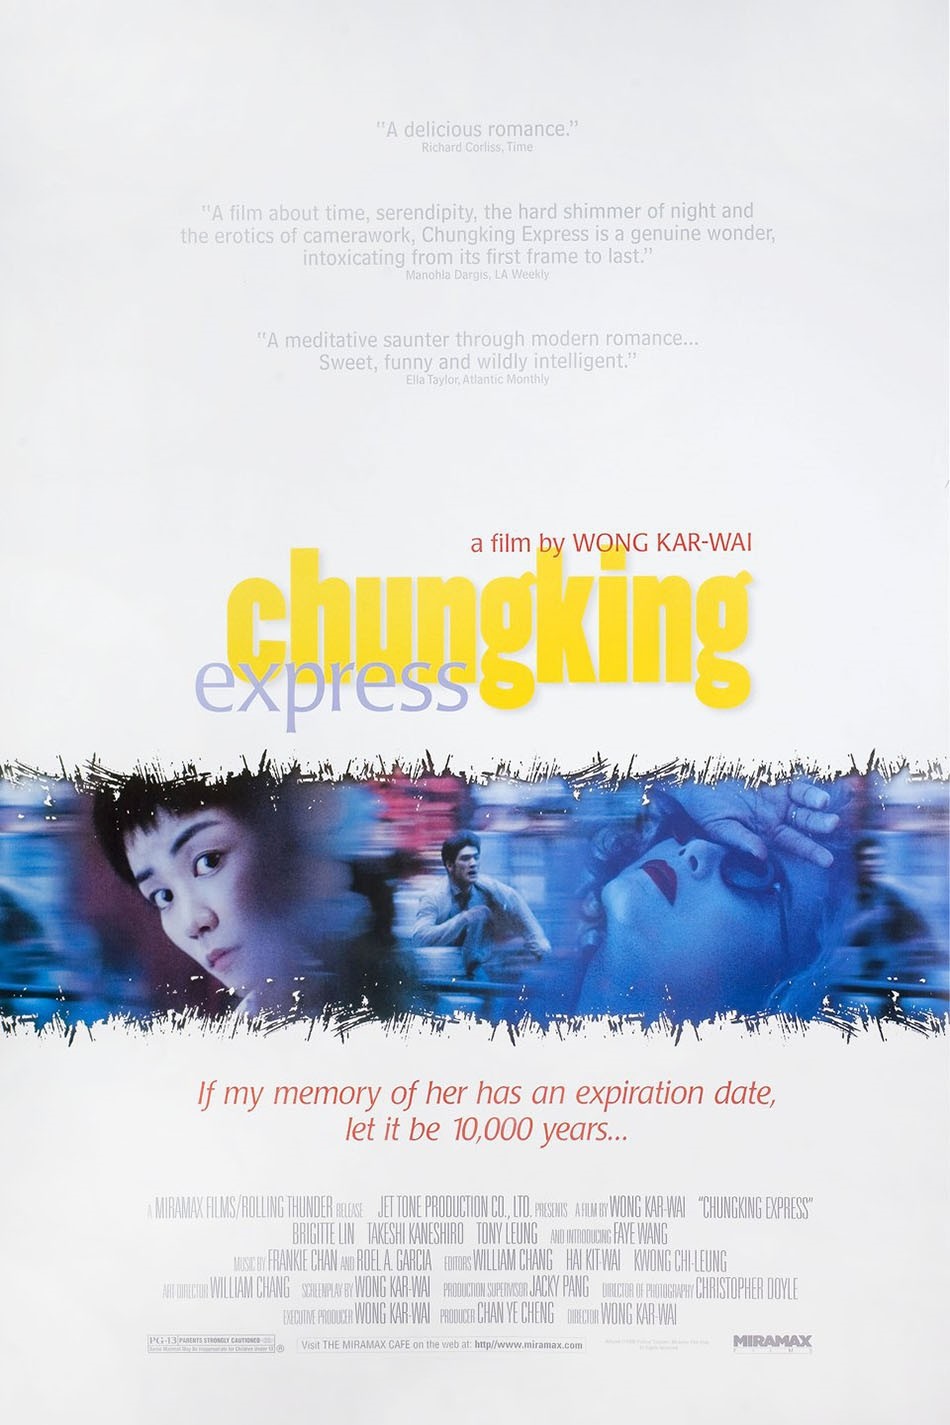 Chungking Express (Chung Hing sam lam)